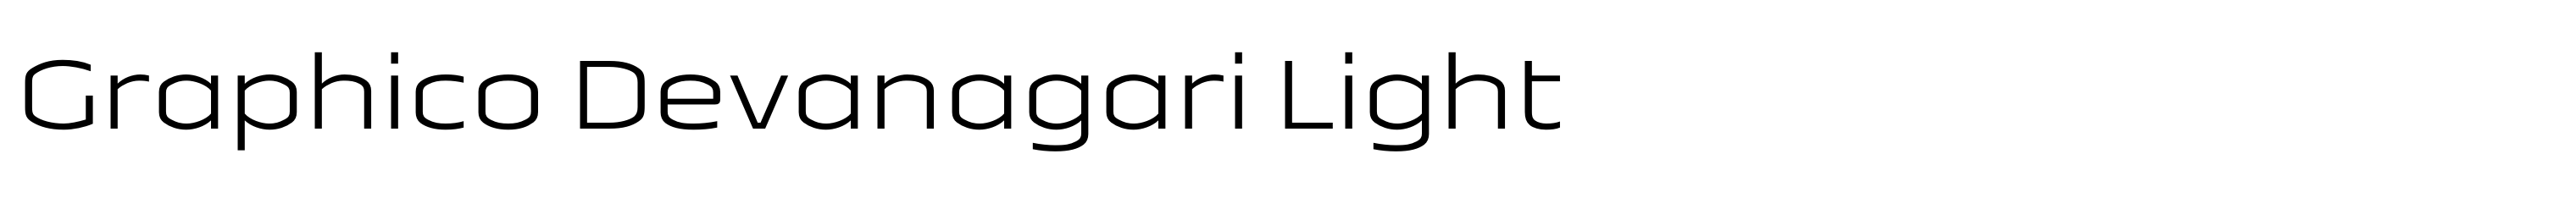 Graphico Devanagari Light